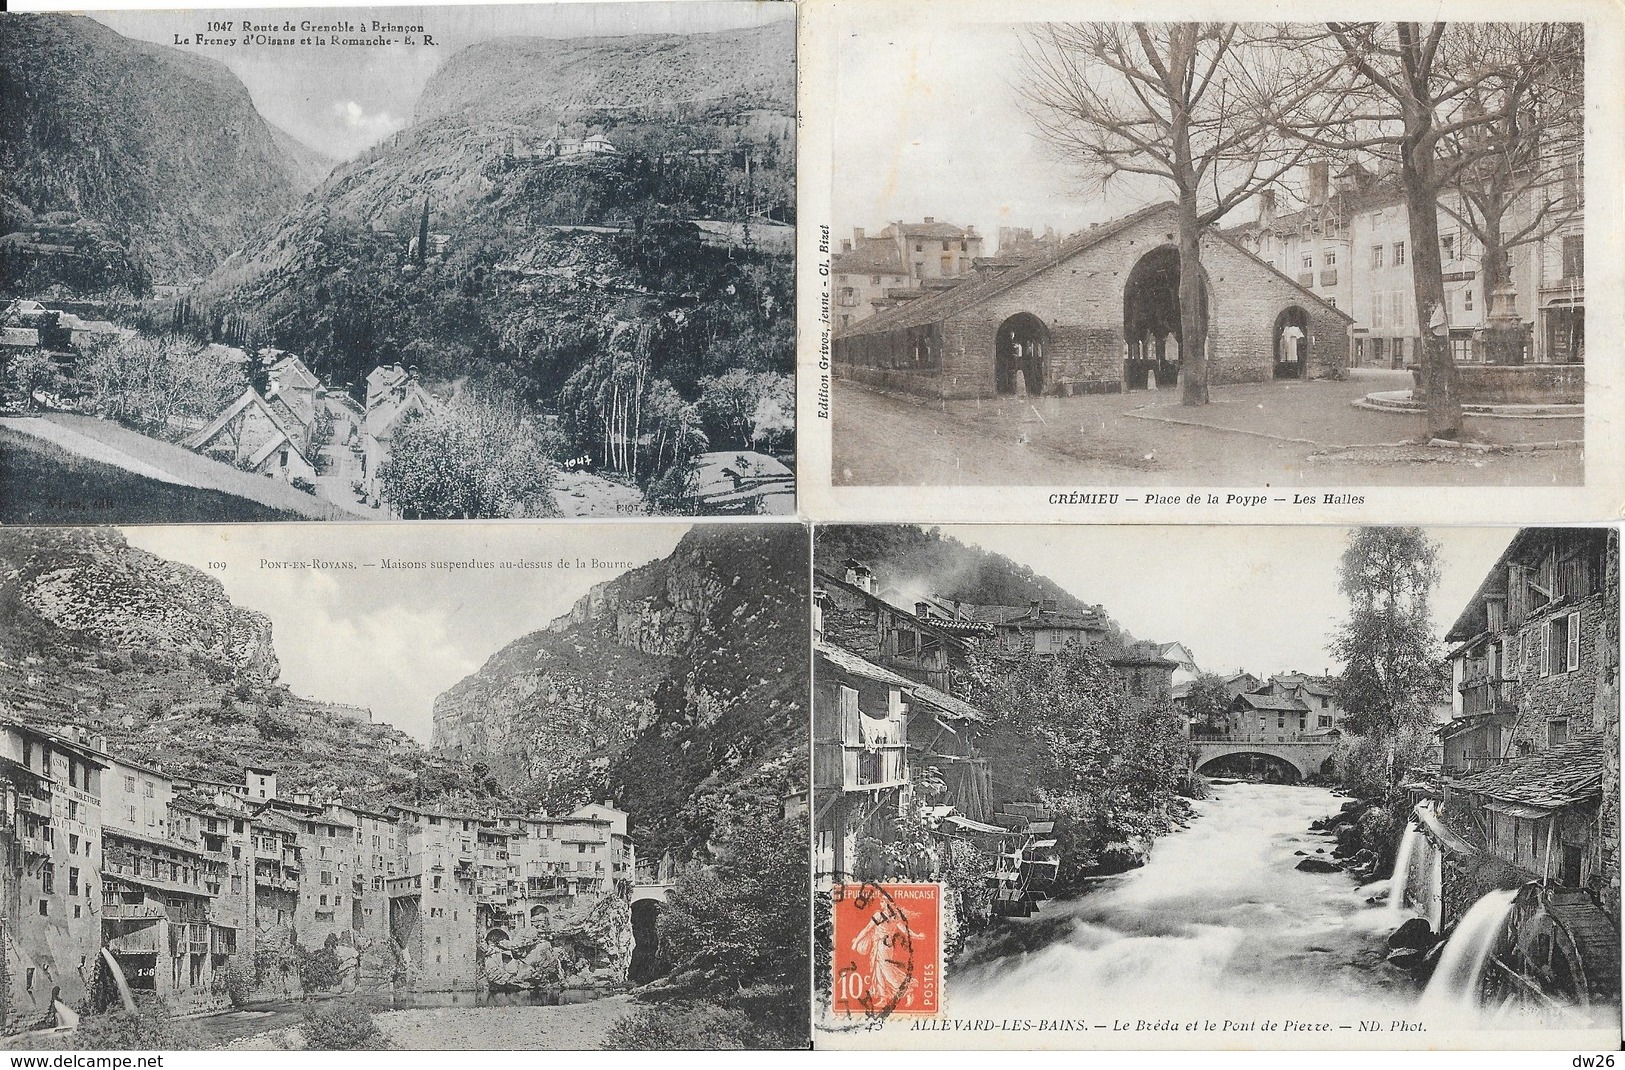 Lot n° 72 de 100 CPA département de l'Isère (38) - Villes, villages, Montagnes, petites animations